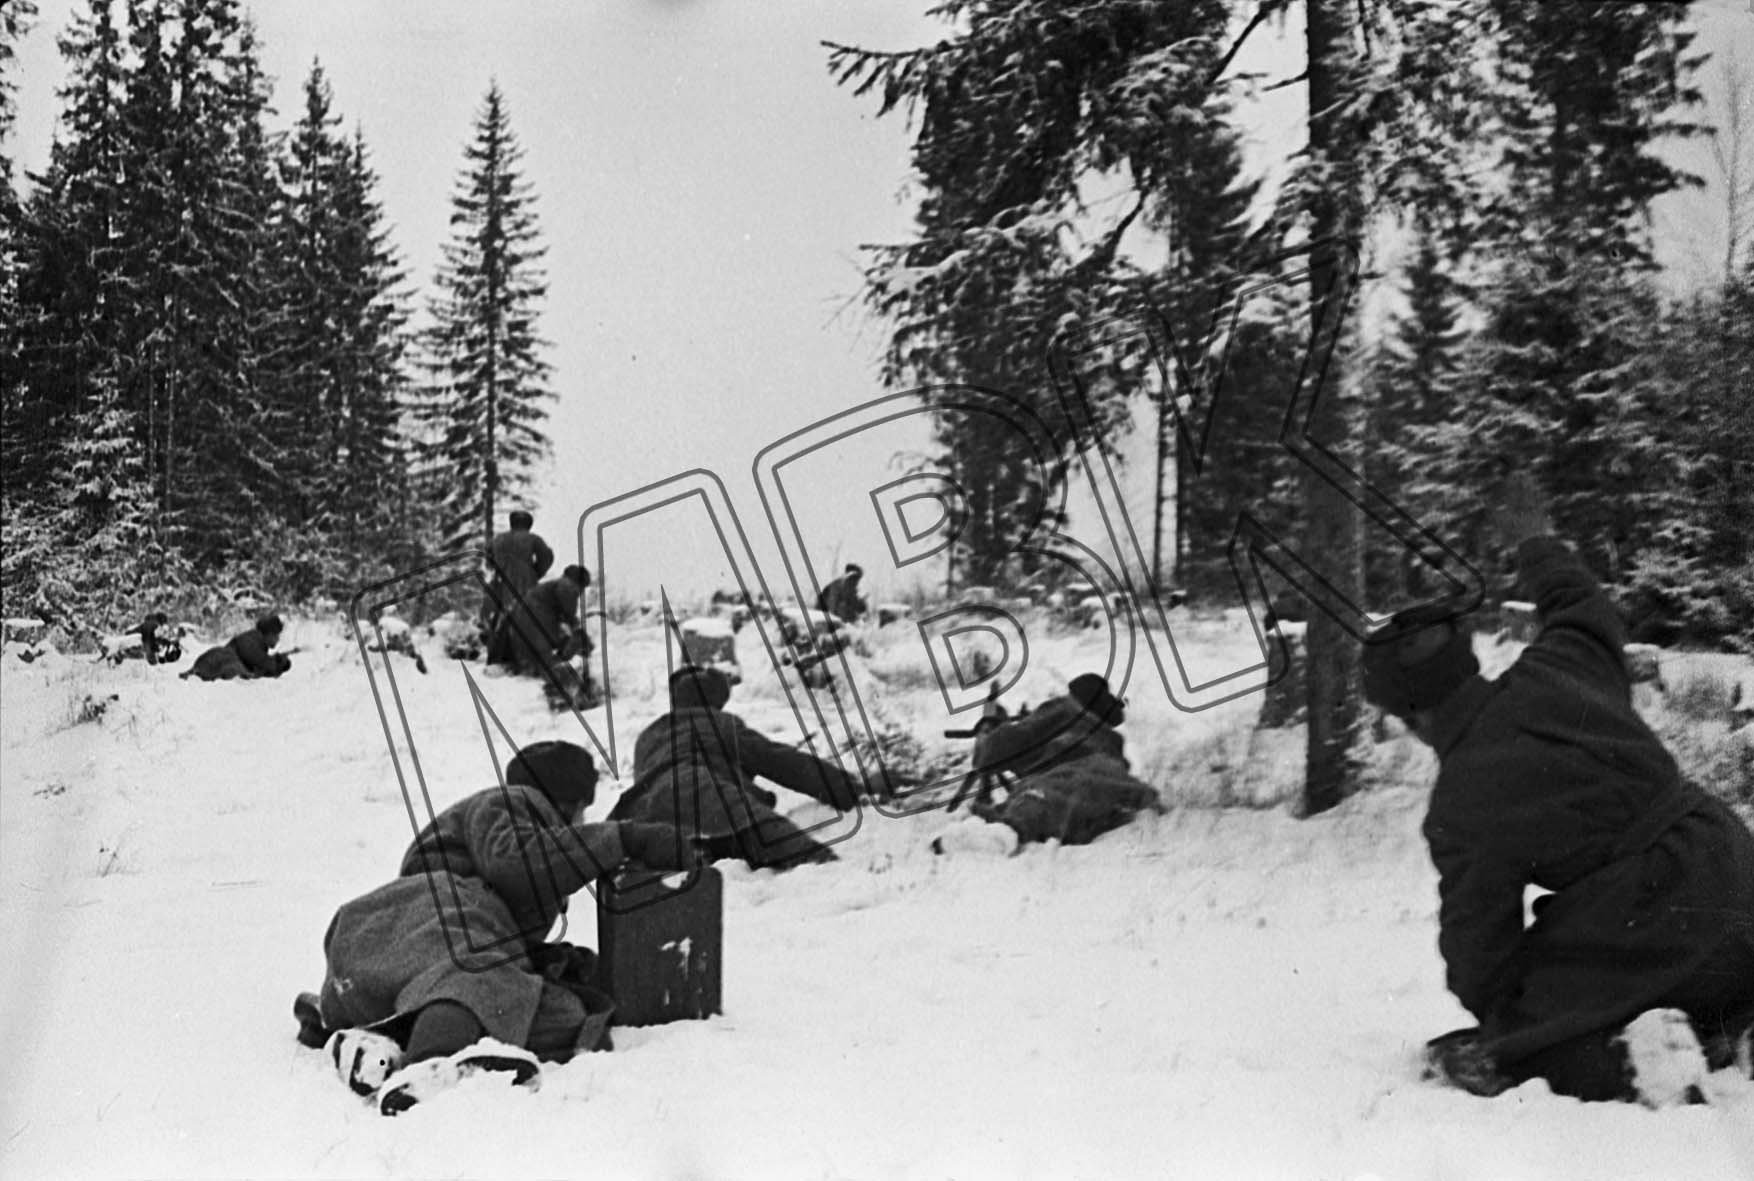 Fotografie: Infanterie im Gefecht im Wald, Ort unbekannt, vermutlich Winter 1942 (Museum Berlin-Karlshorst RR-P)